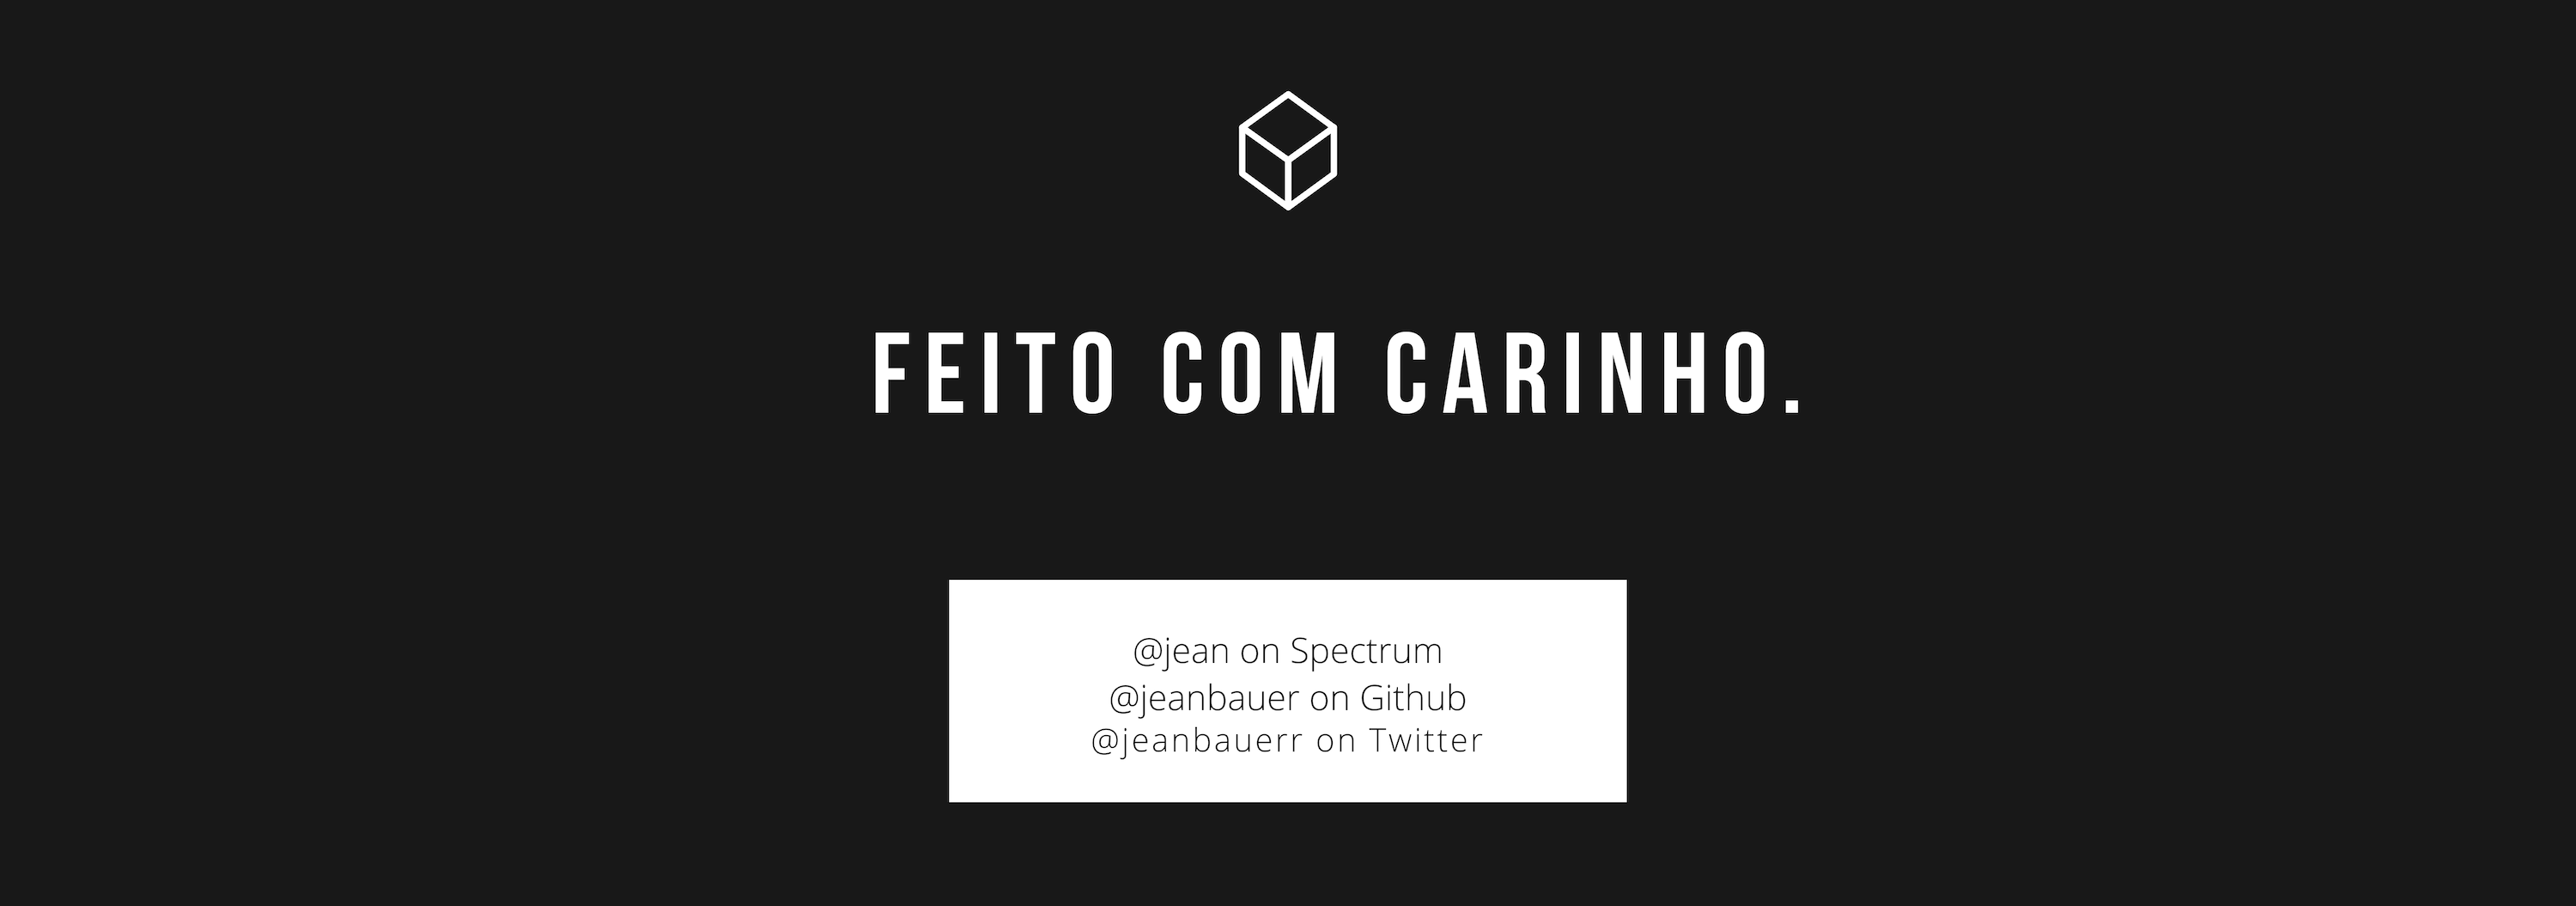 _made-with-carinho.png